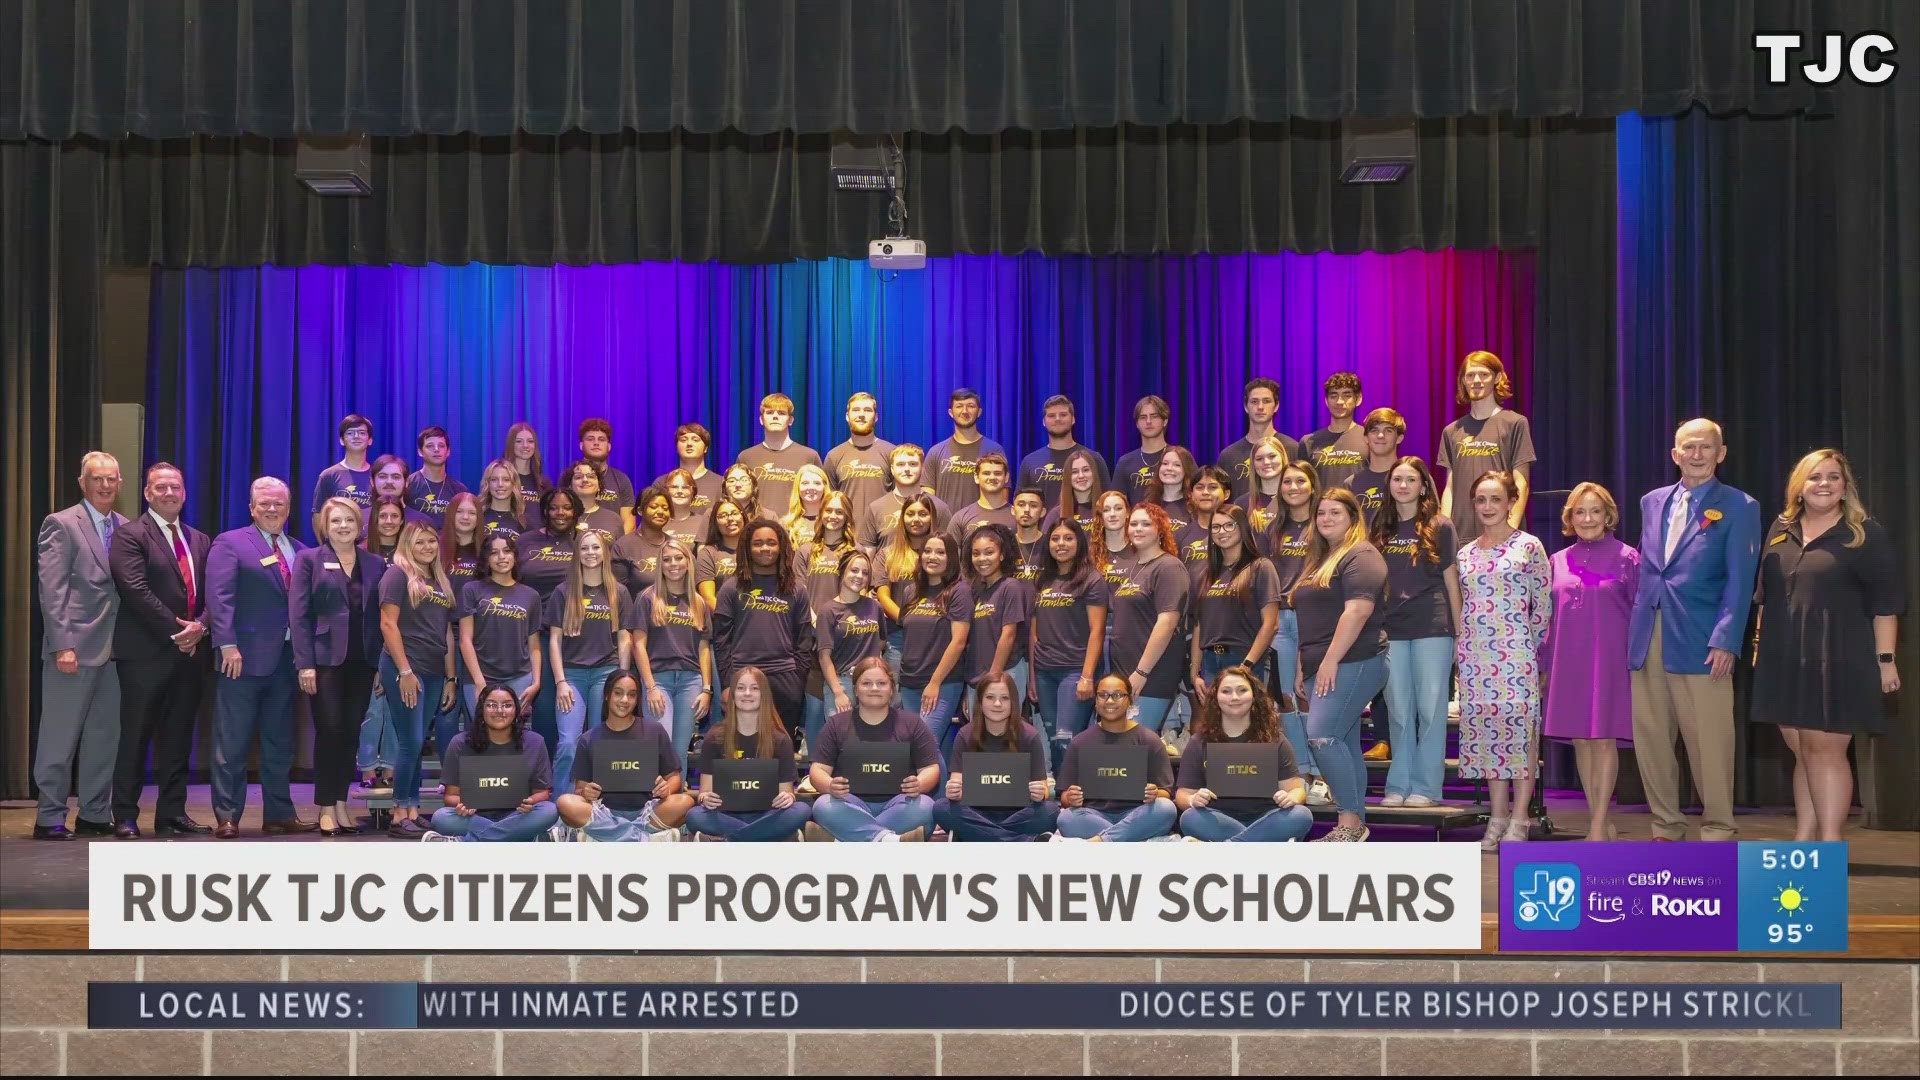 Rusk TJC Citizen's Program honors new scholars | cbs19.tv